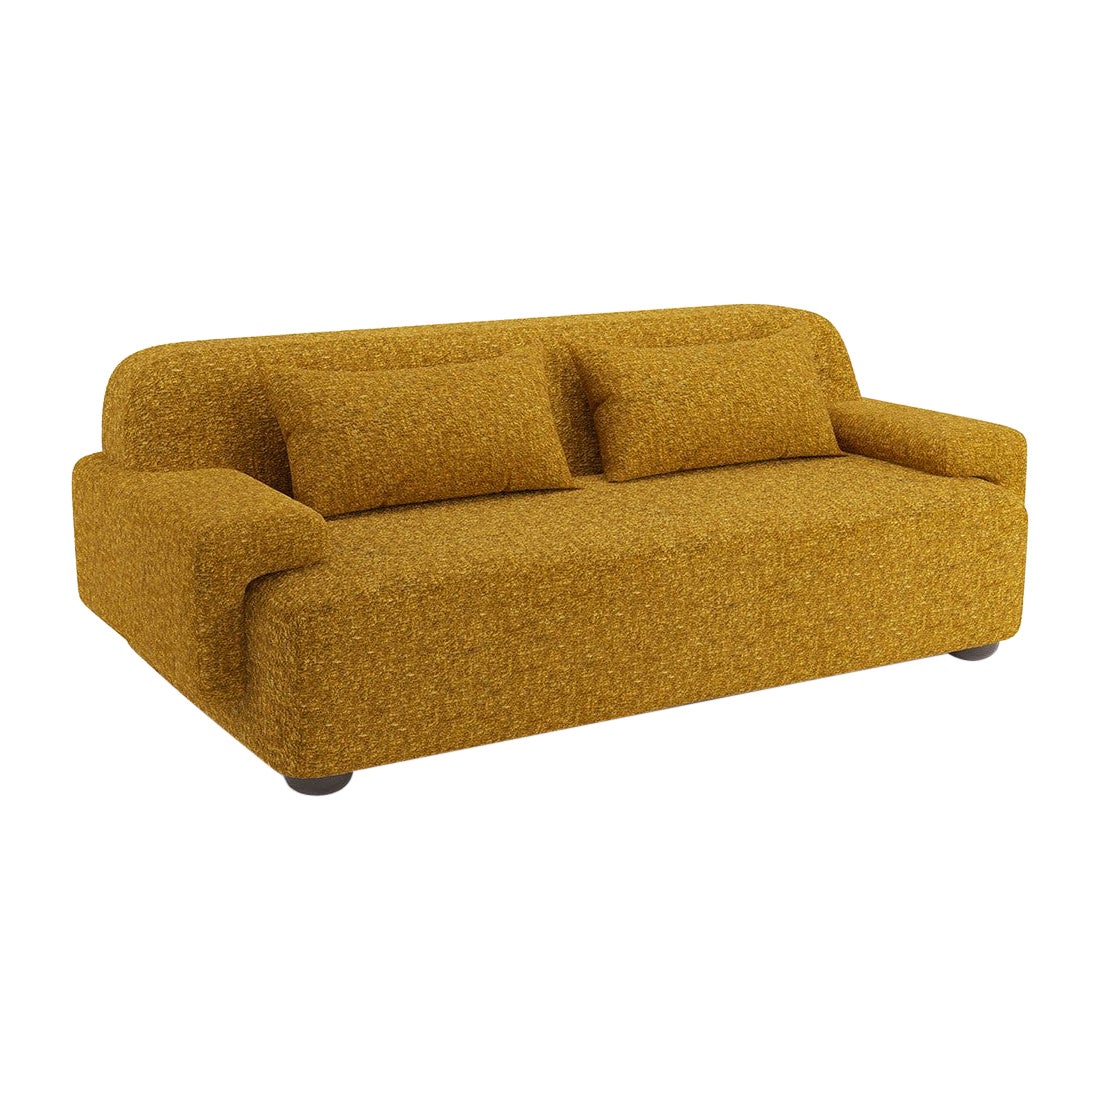 Popus Editions Lena 2.5 Seater Sofa in Amber Venice Chenille Velvet Upholstery